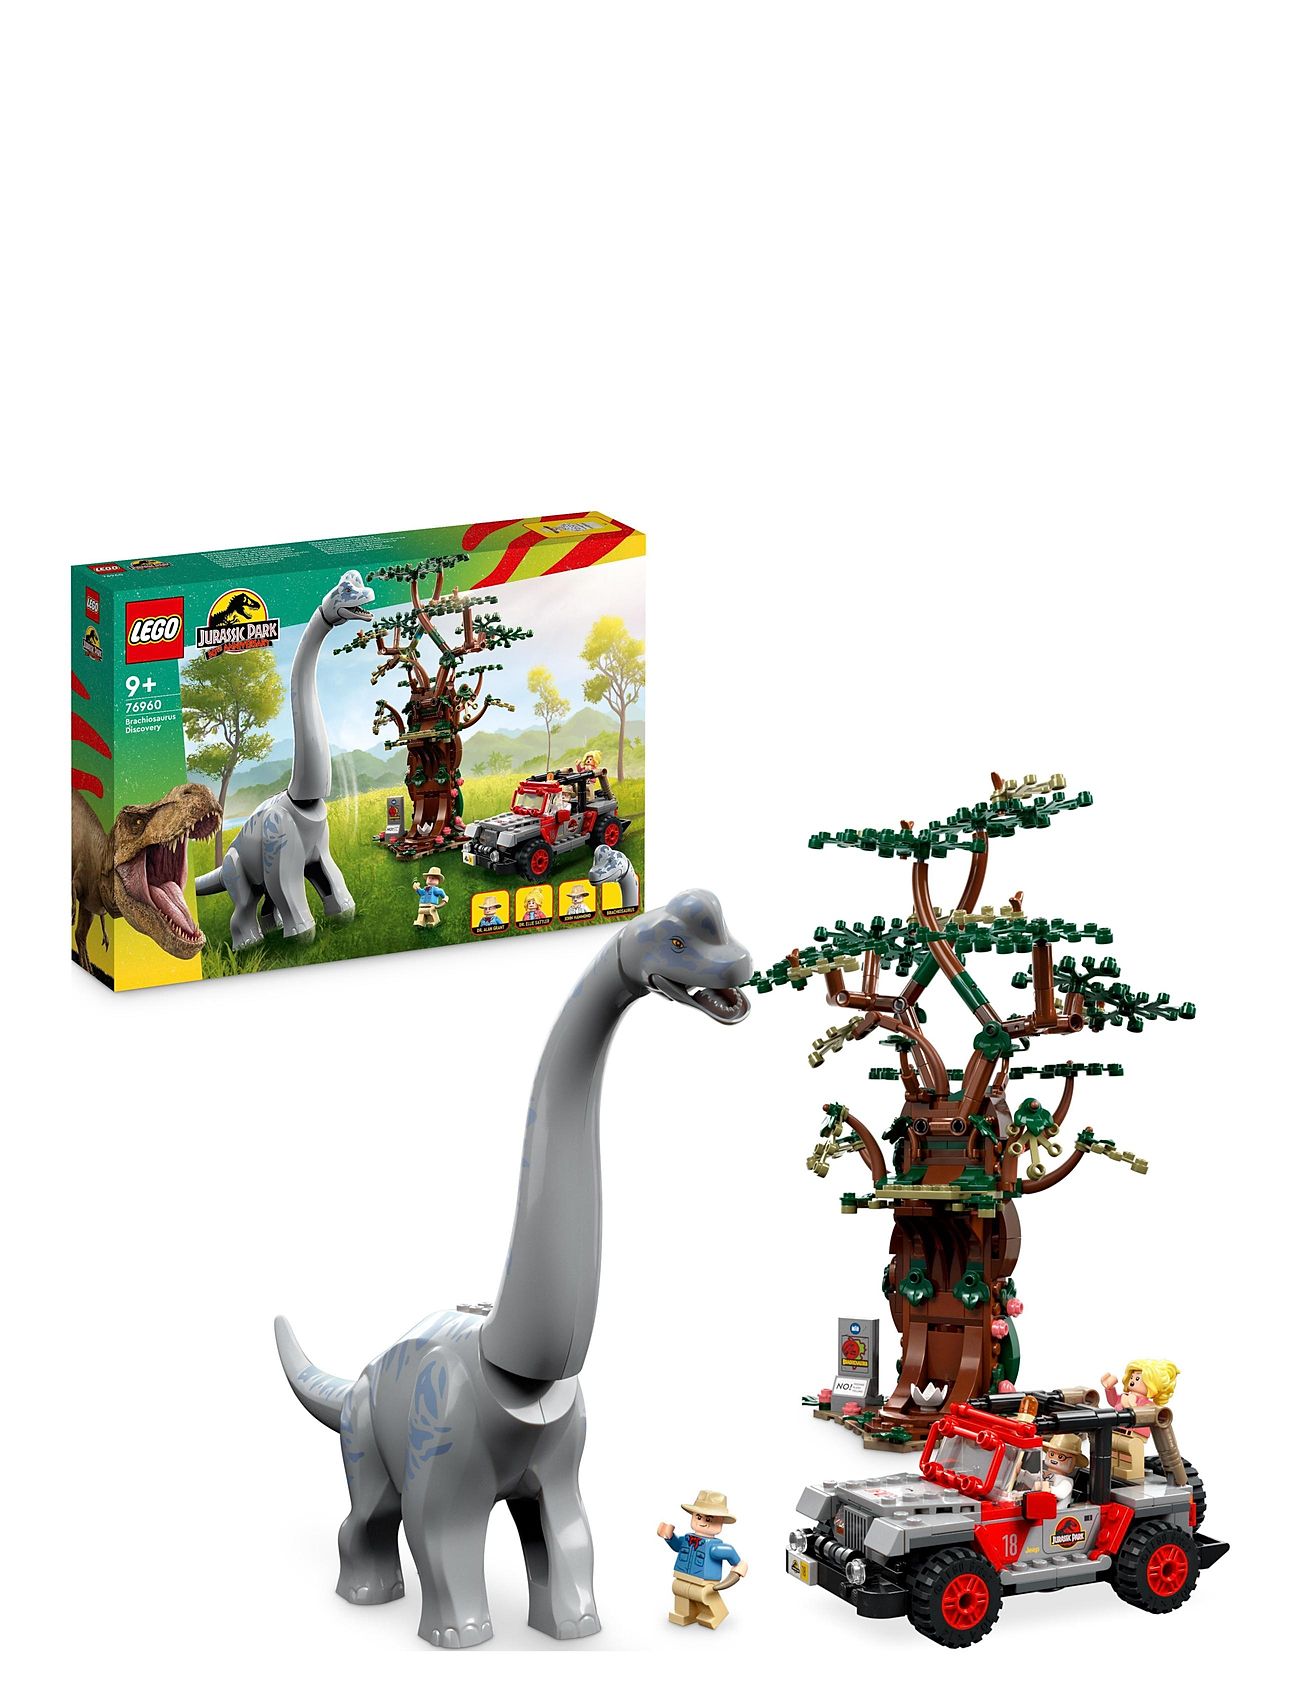 LEGO "Brachiosaurus Discovery Dino Set Toys Lego jurassic World Multi/patterned LEGO"